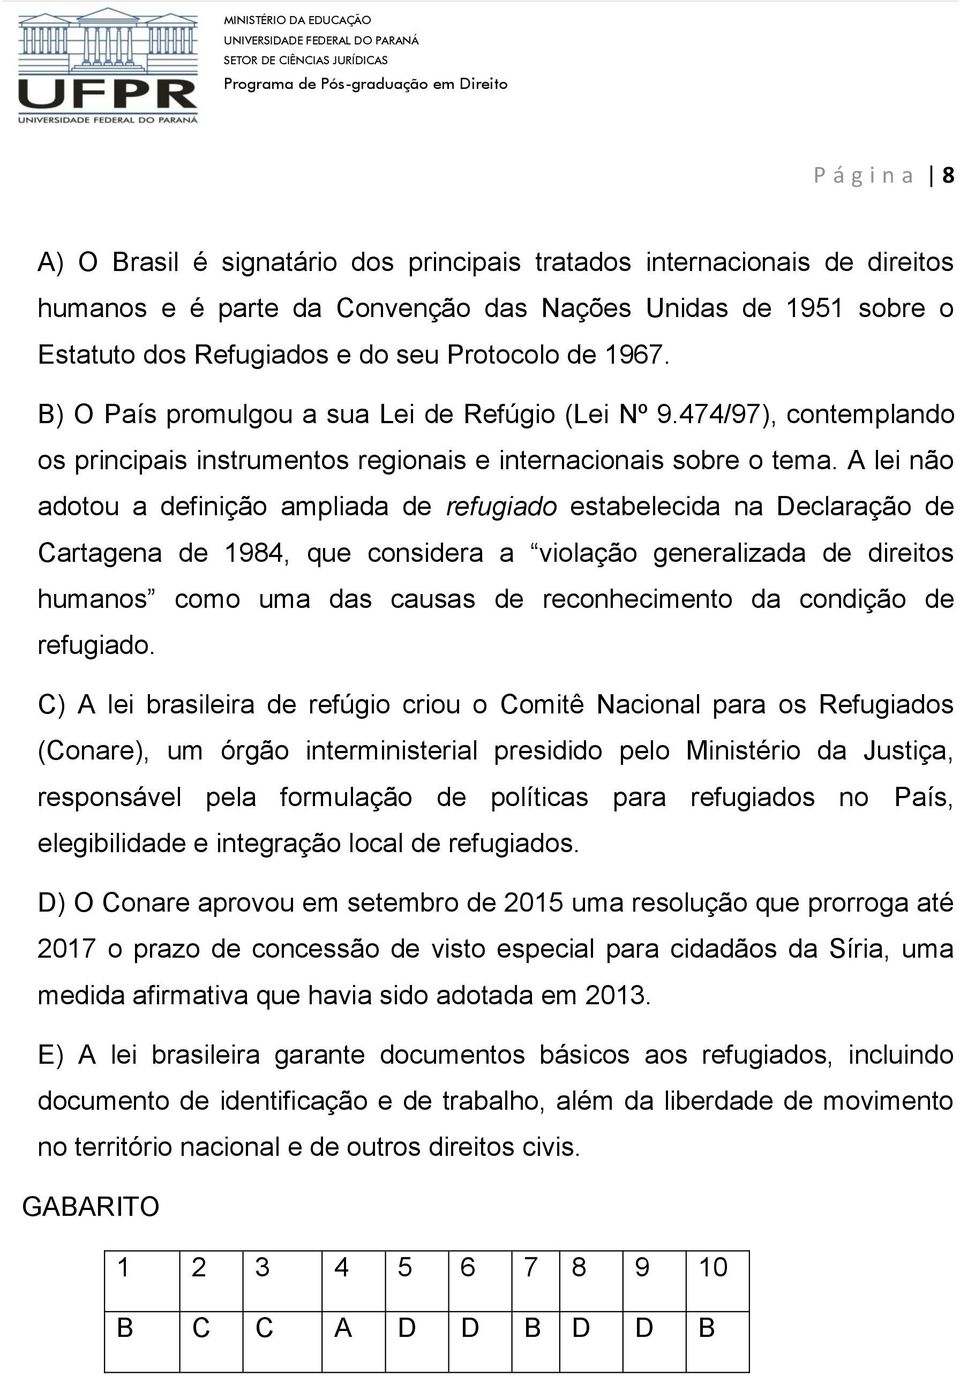 A lei não adotou a definição ampliada de refugiado estabelecida na Declaração de Cartagena de 1984, que considera a violação generalizada de direitos humanos como uma das causas de reconhecimento da